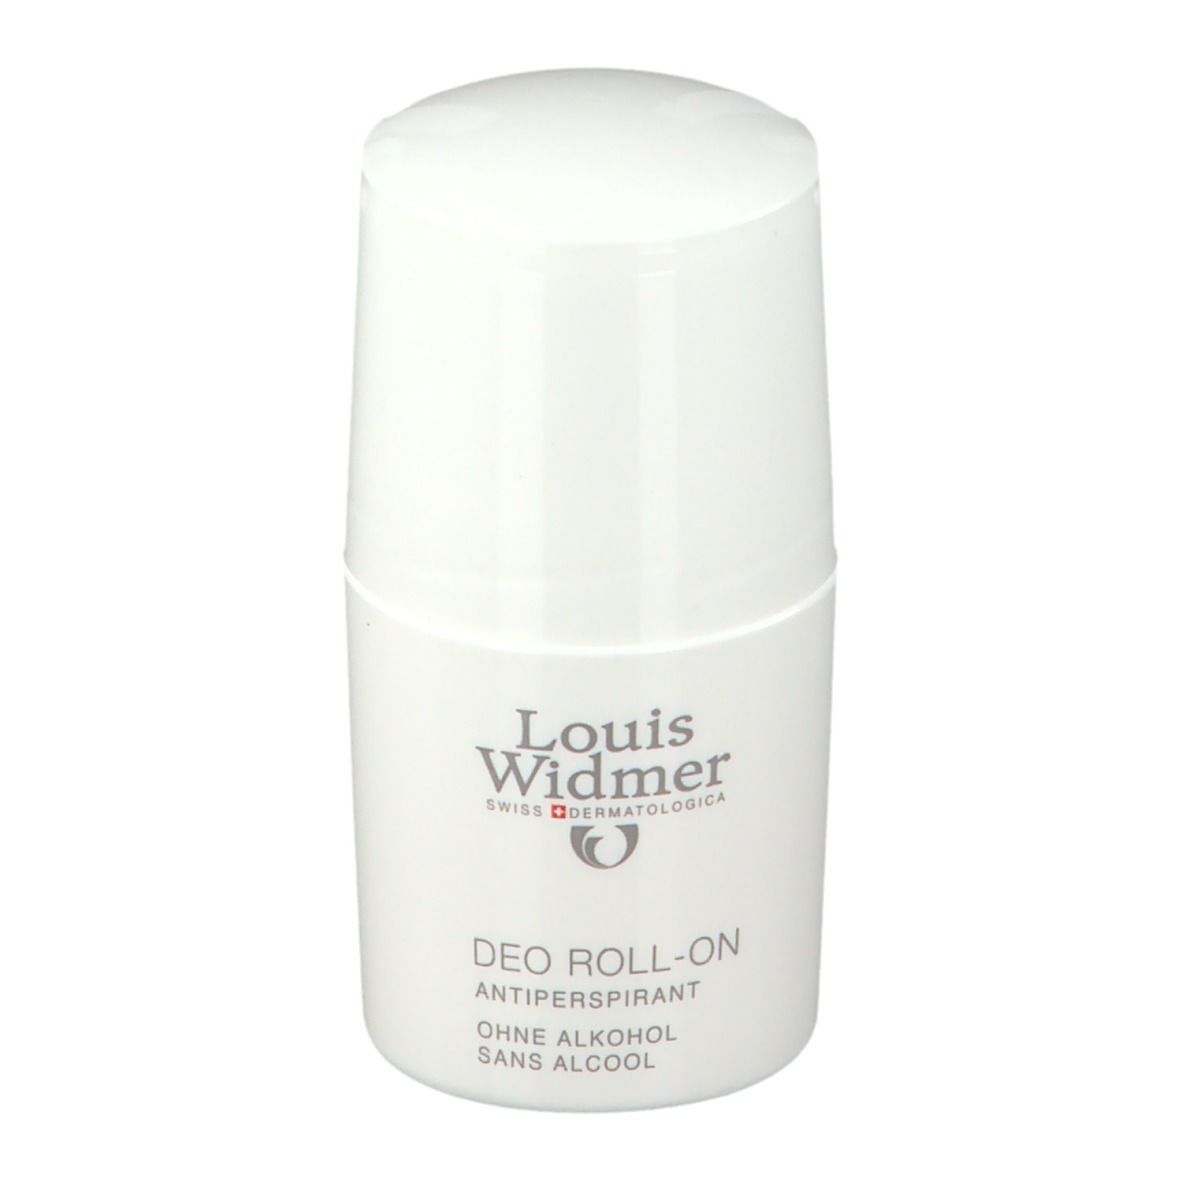 Louis Widmer Deo Roll-on Antiperspirant leicht parfümiert